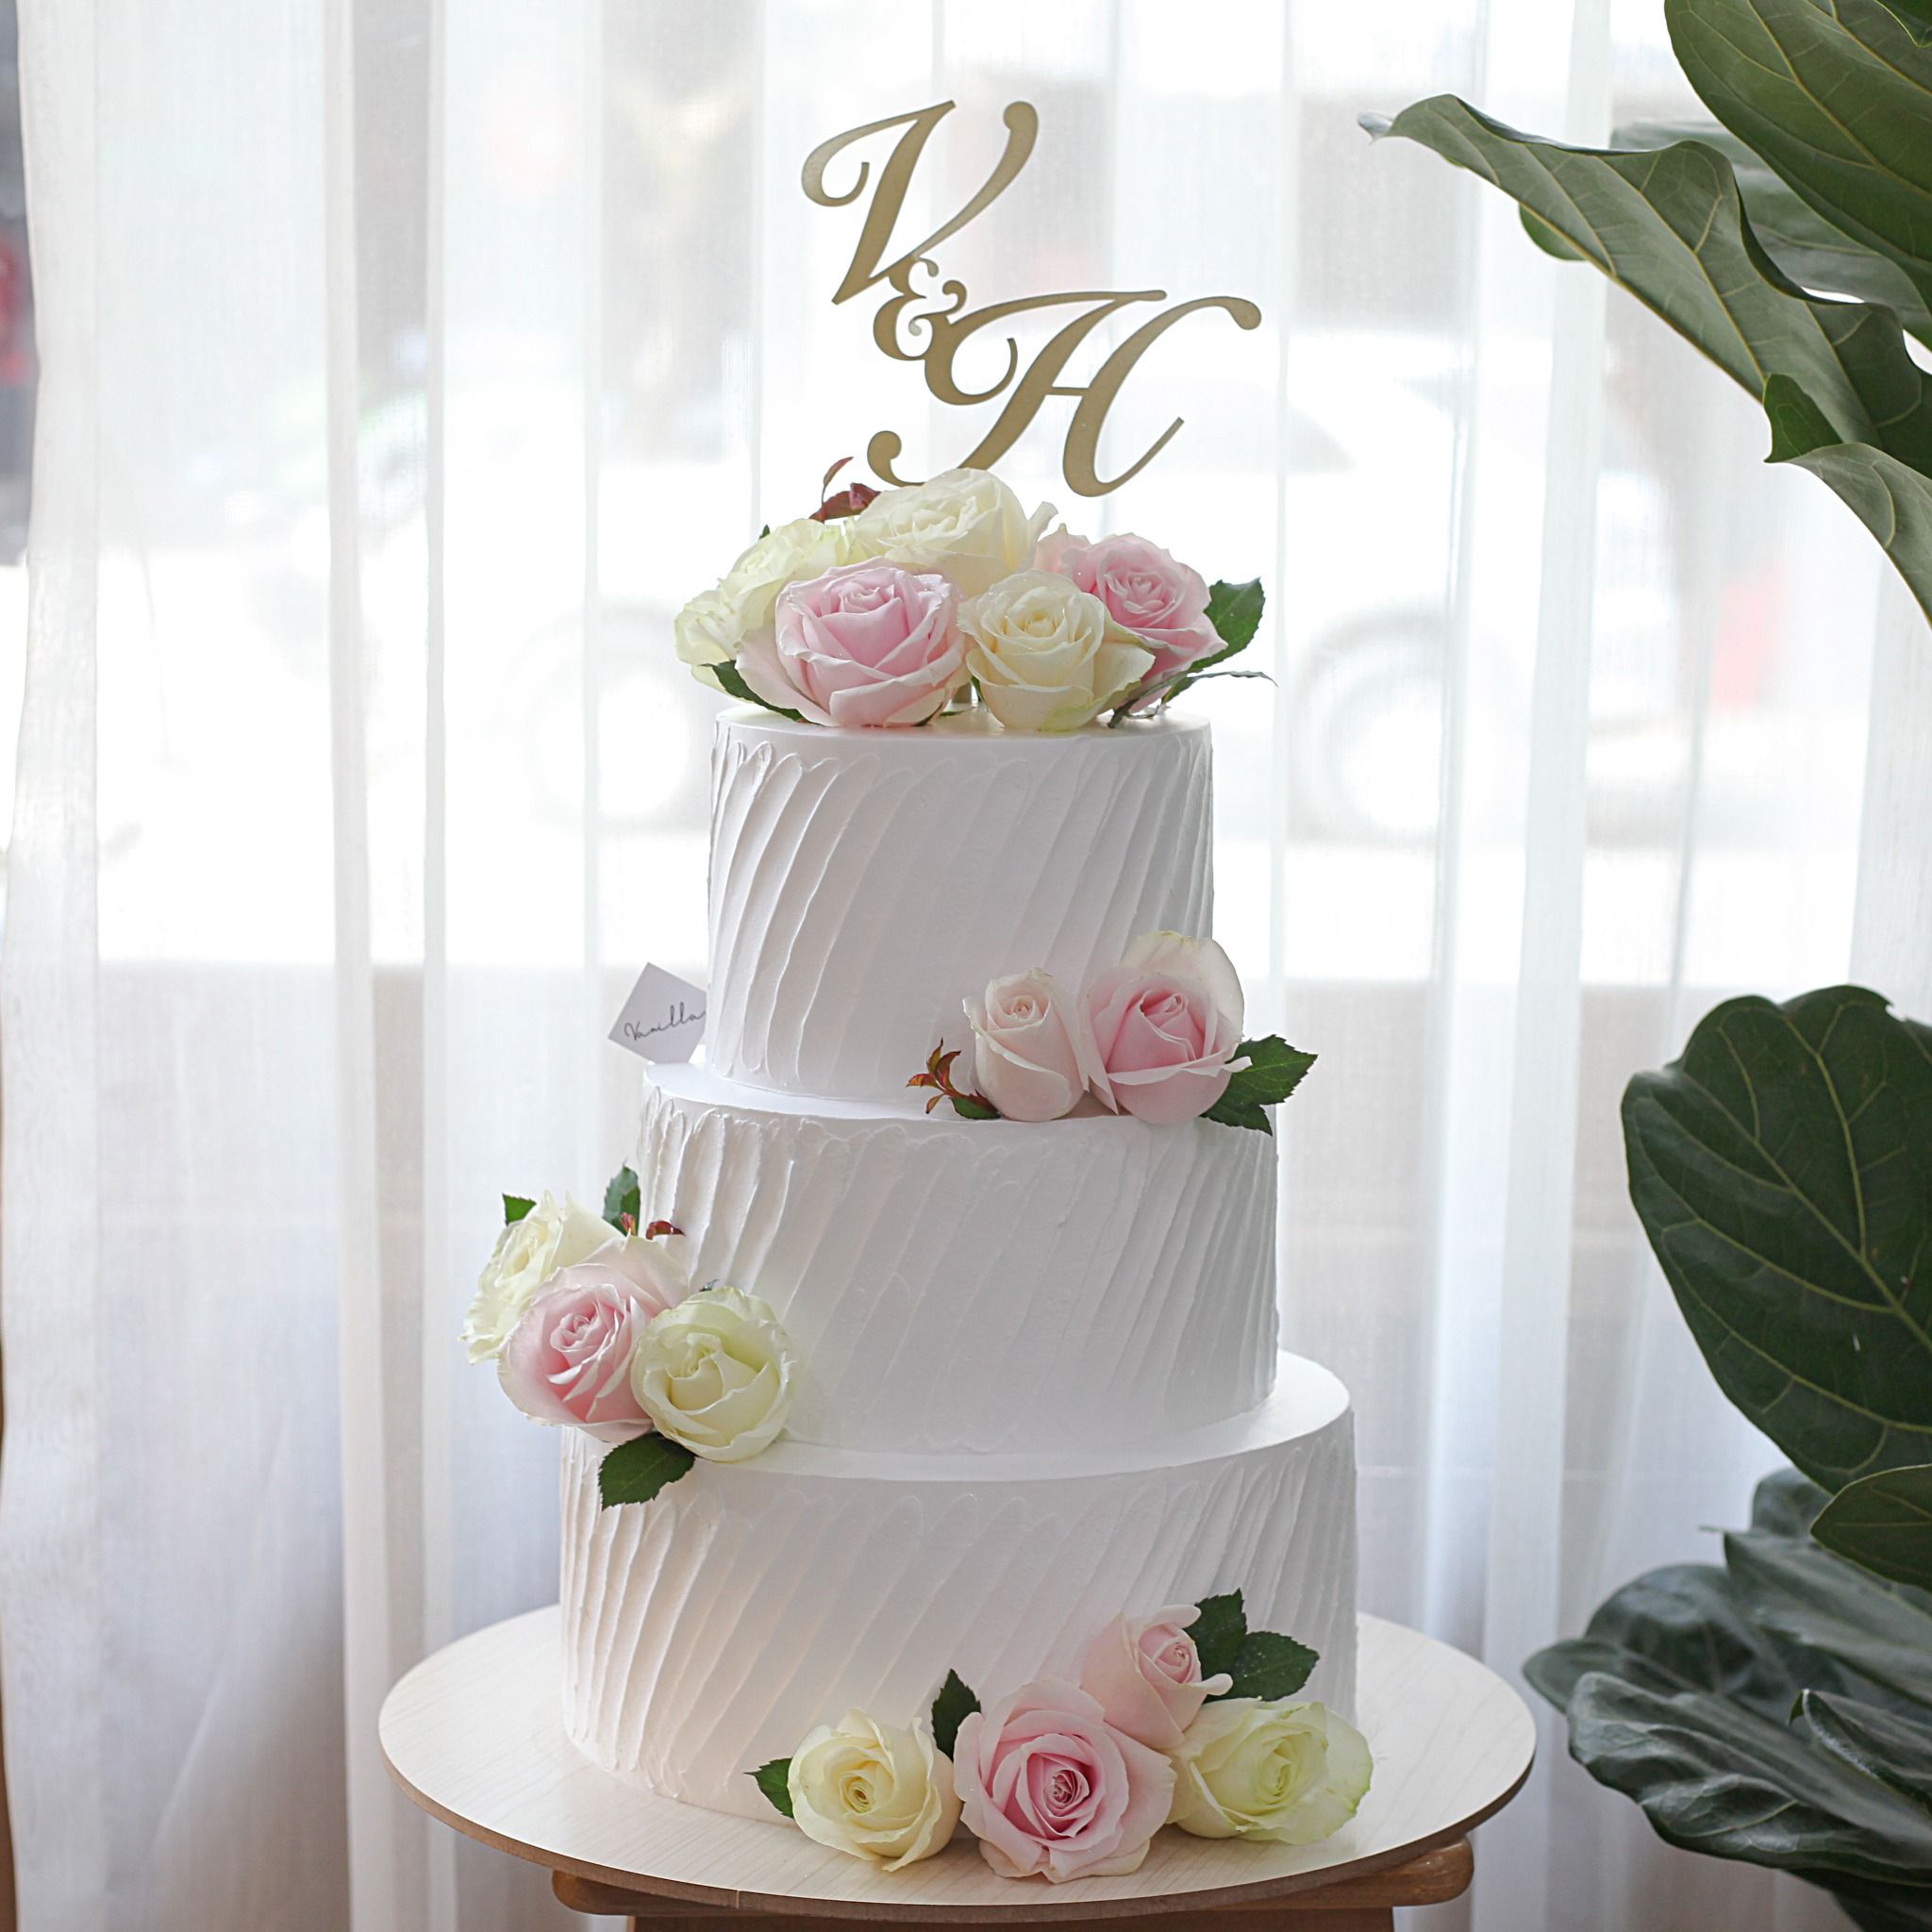  Bánh cưới 2 tầng gắn hoa tươi - Bánh cưới Đà Nẵng 